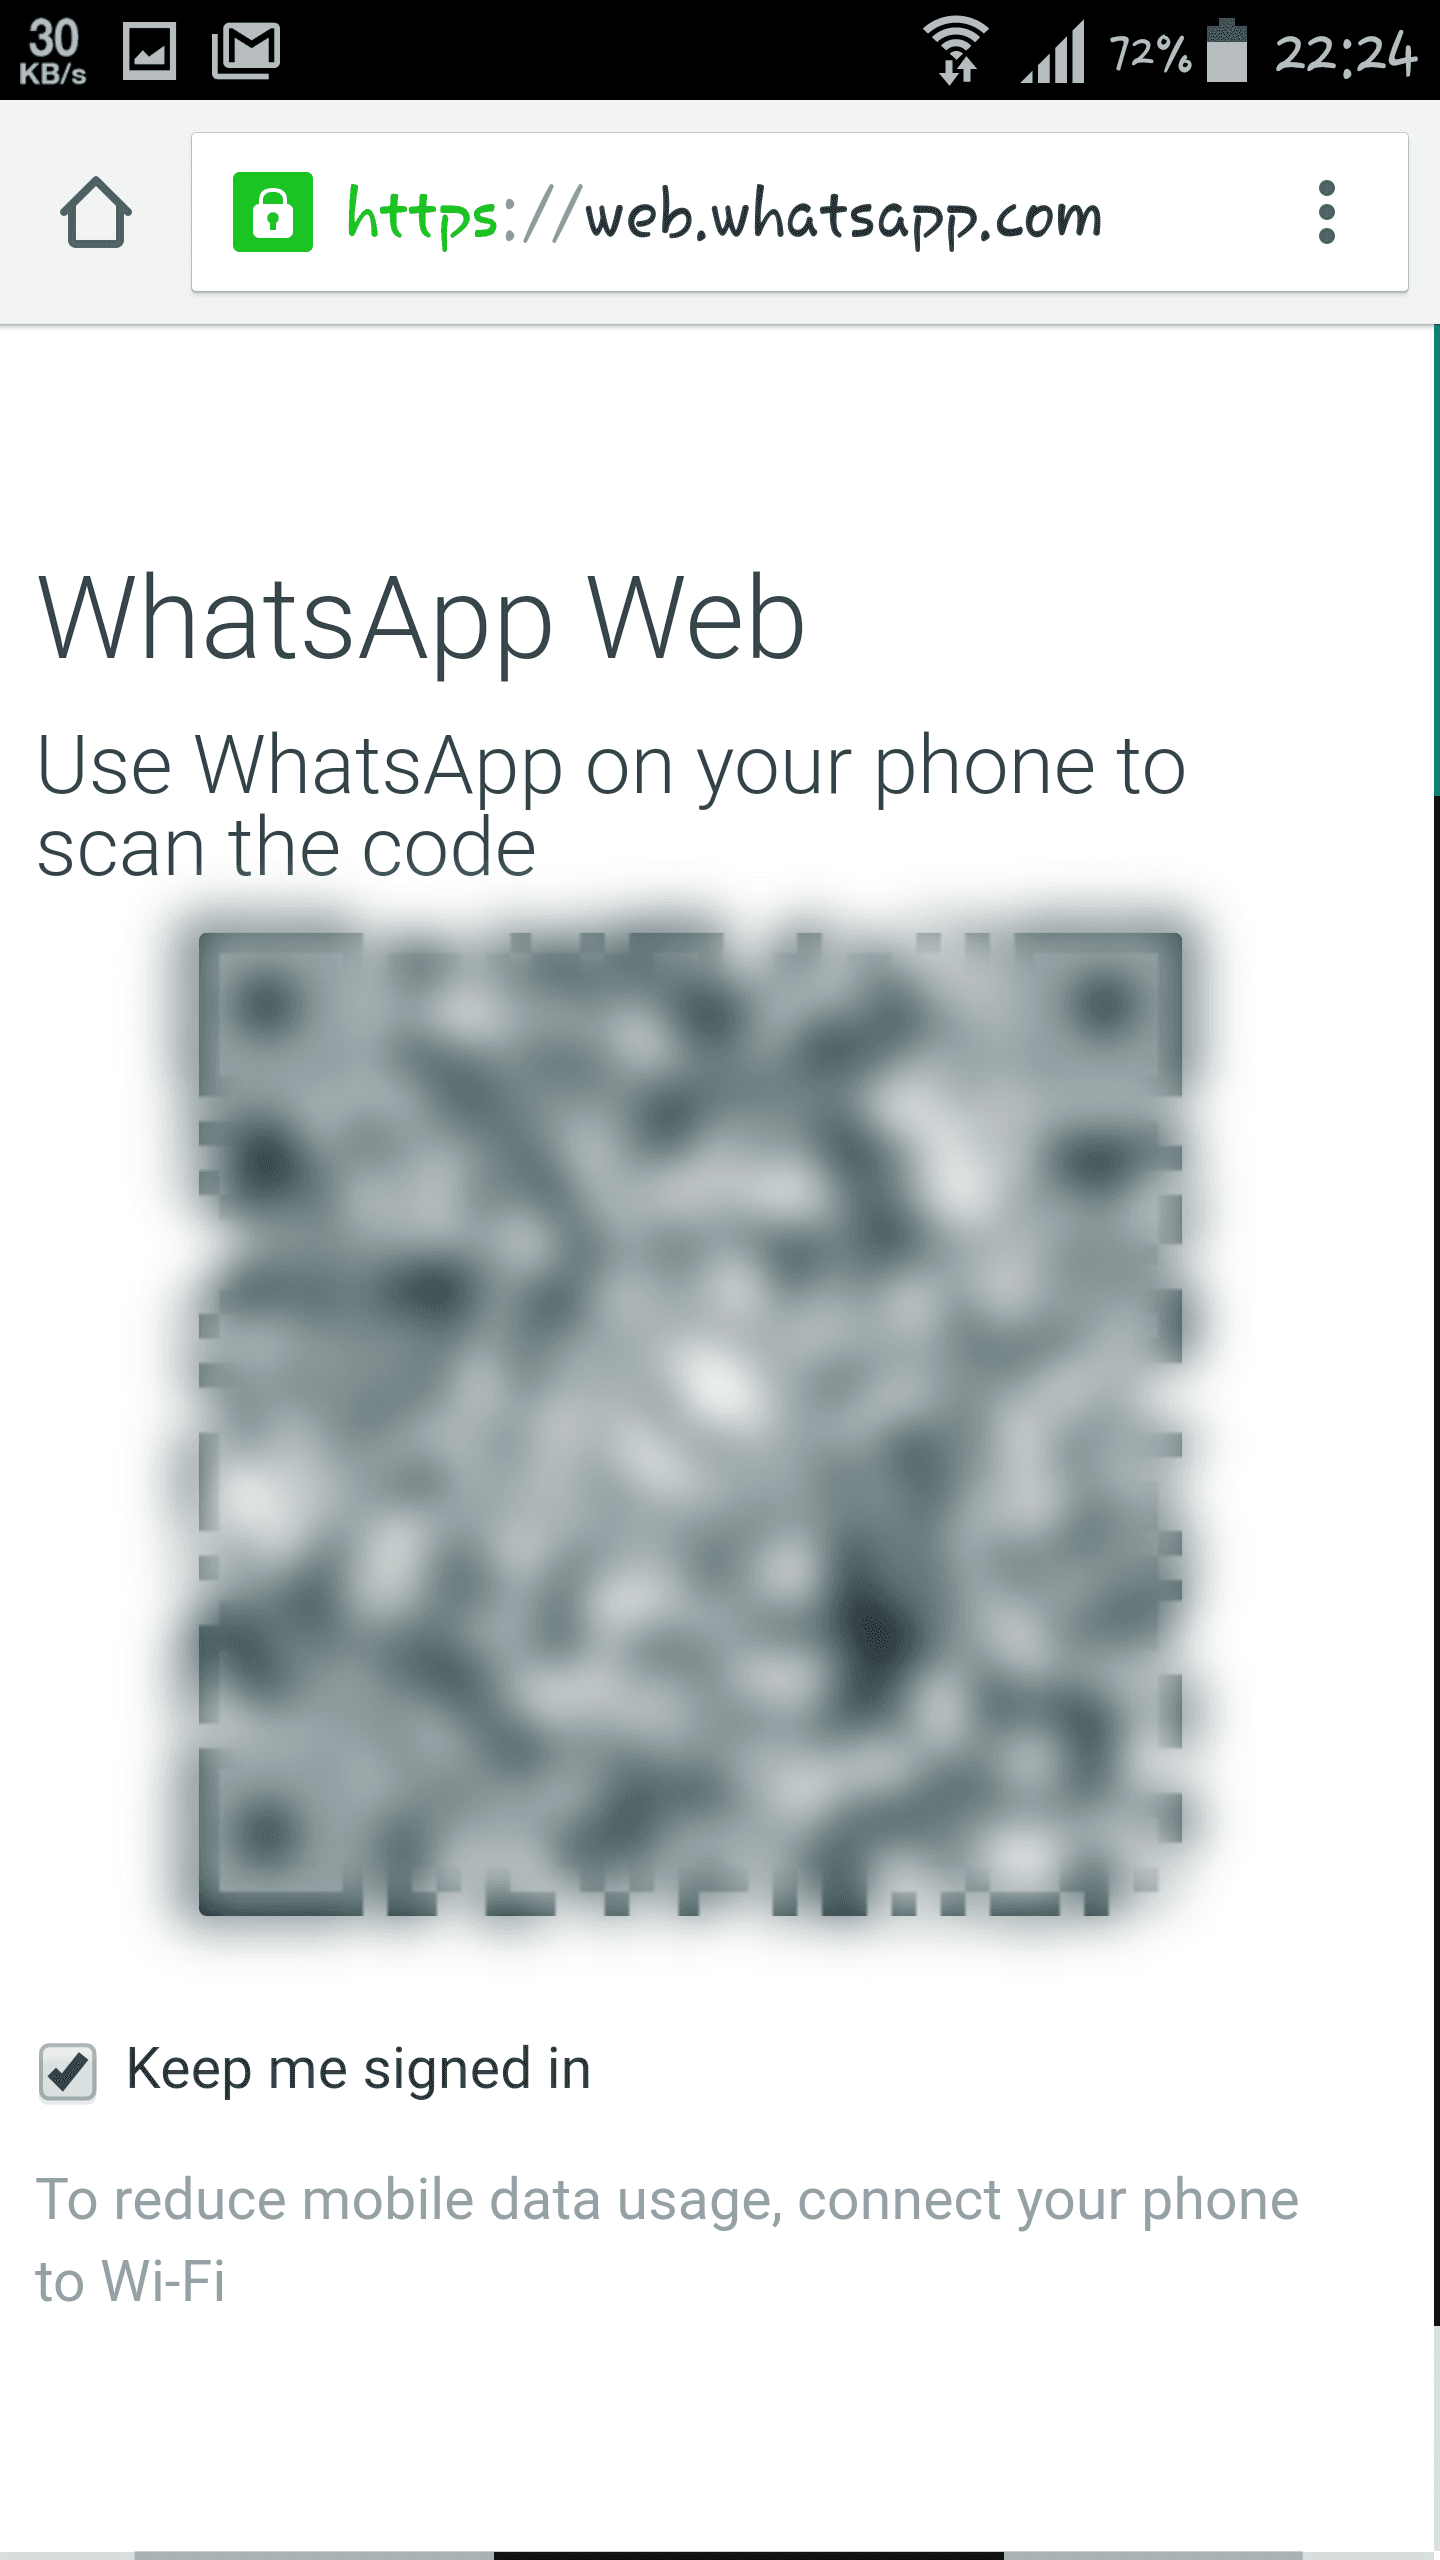 خدعة بسيطة لإستخدام تطبيق WhatsApp بدون الحاجة إلى بطاقة SIM